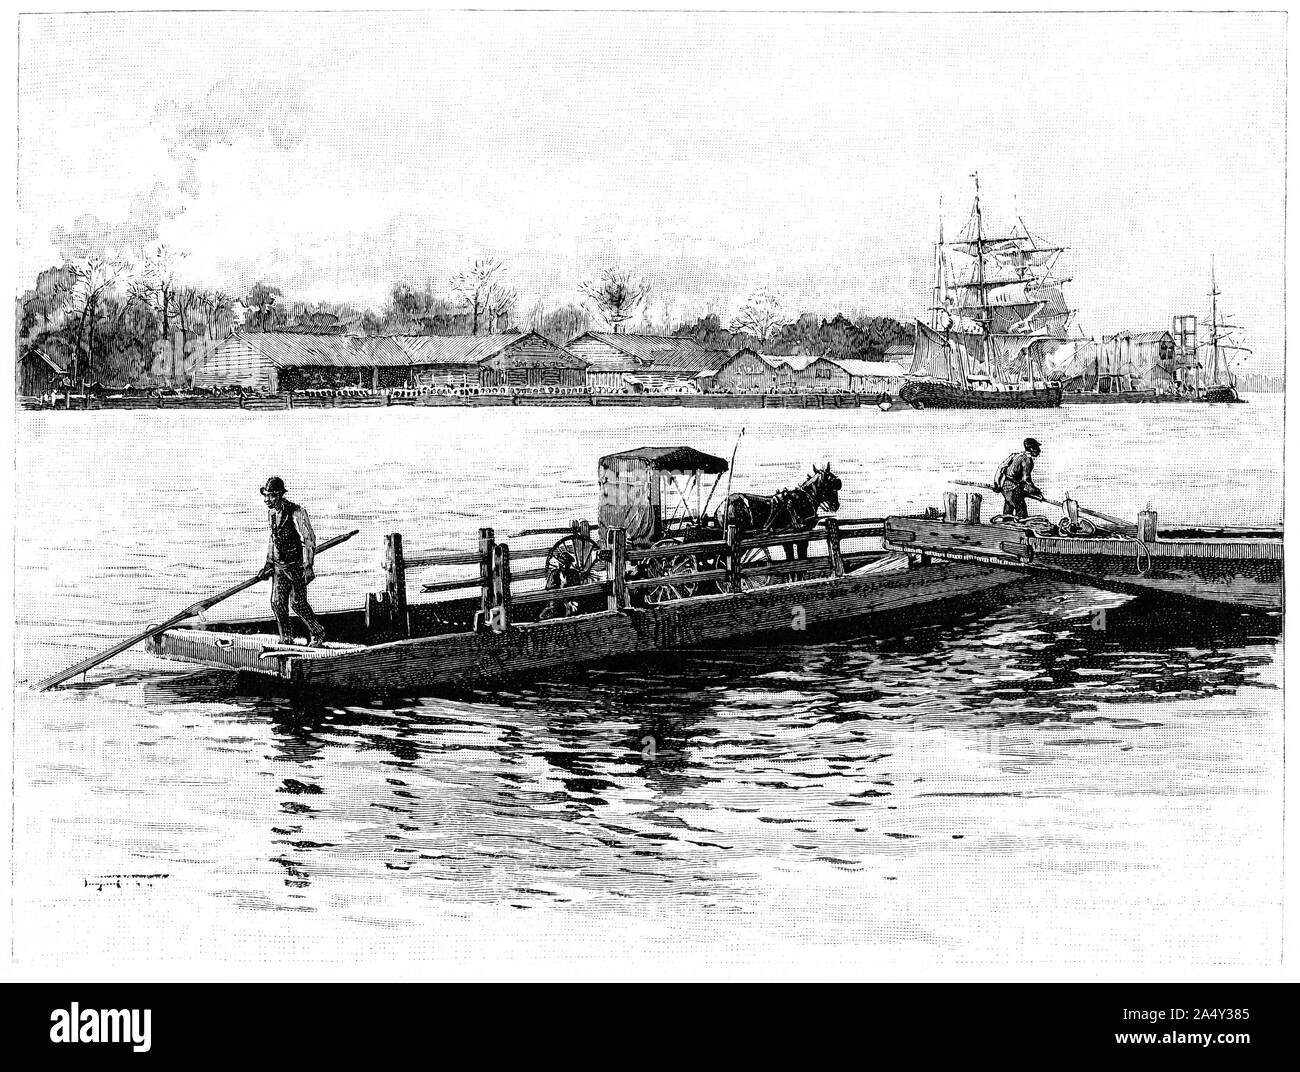 Incisione di un ferry boat che trasportano una carrozza trainata da cavalli e provviste navali in background, a Wilmington, Carolina del Nord. Da Harper's magazine 1895 Foto Stock